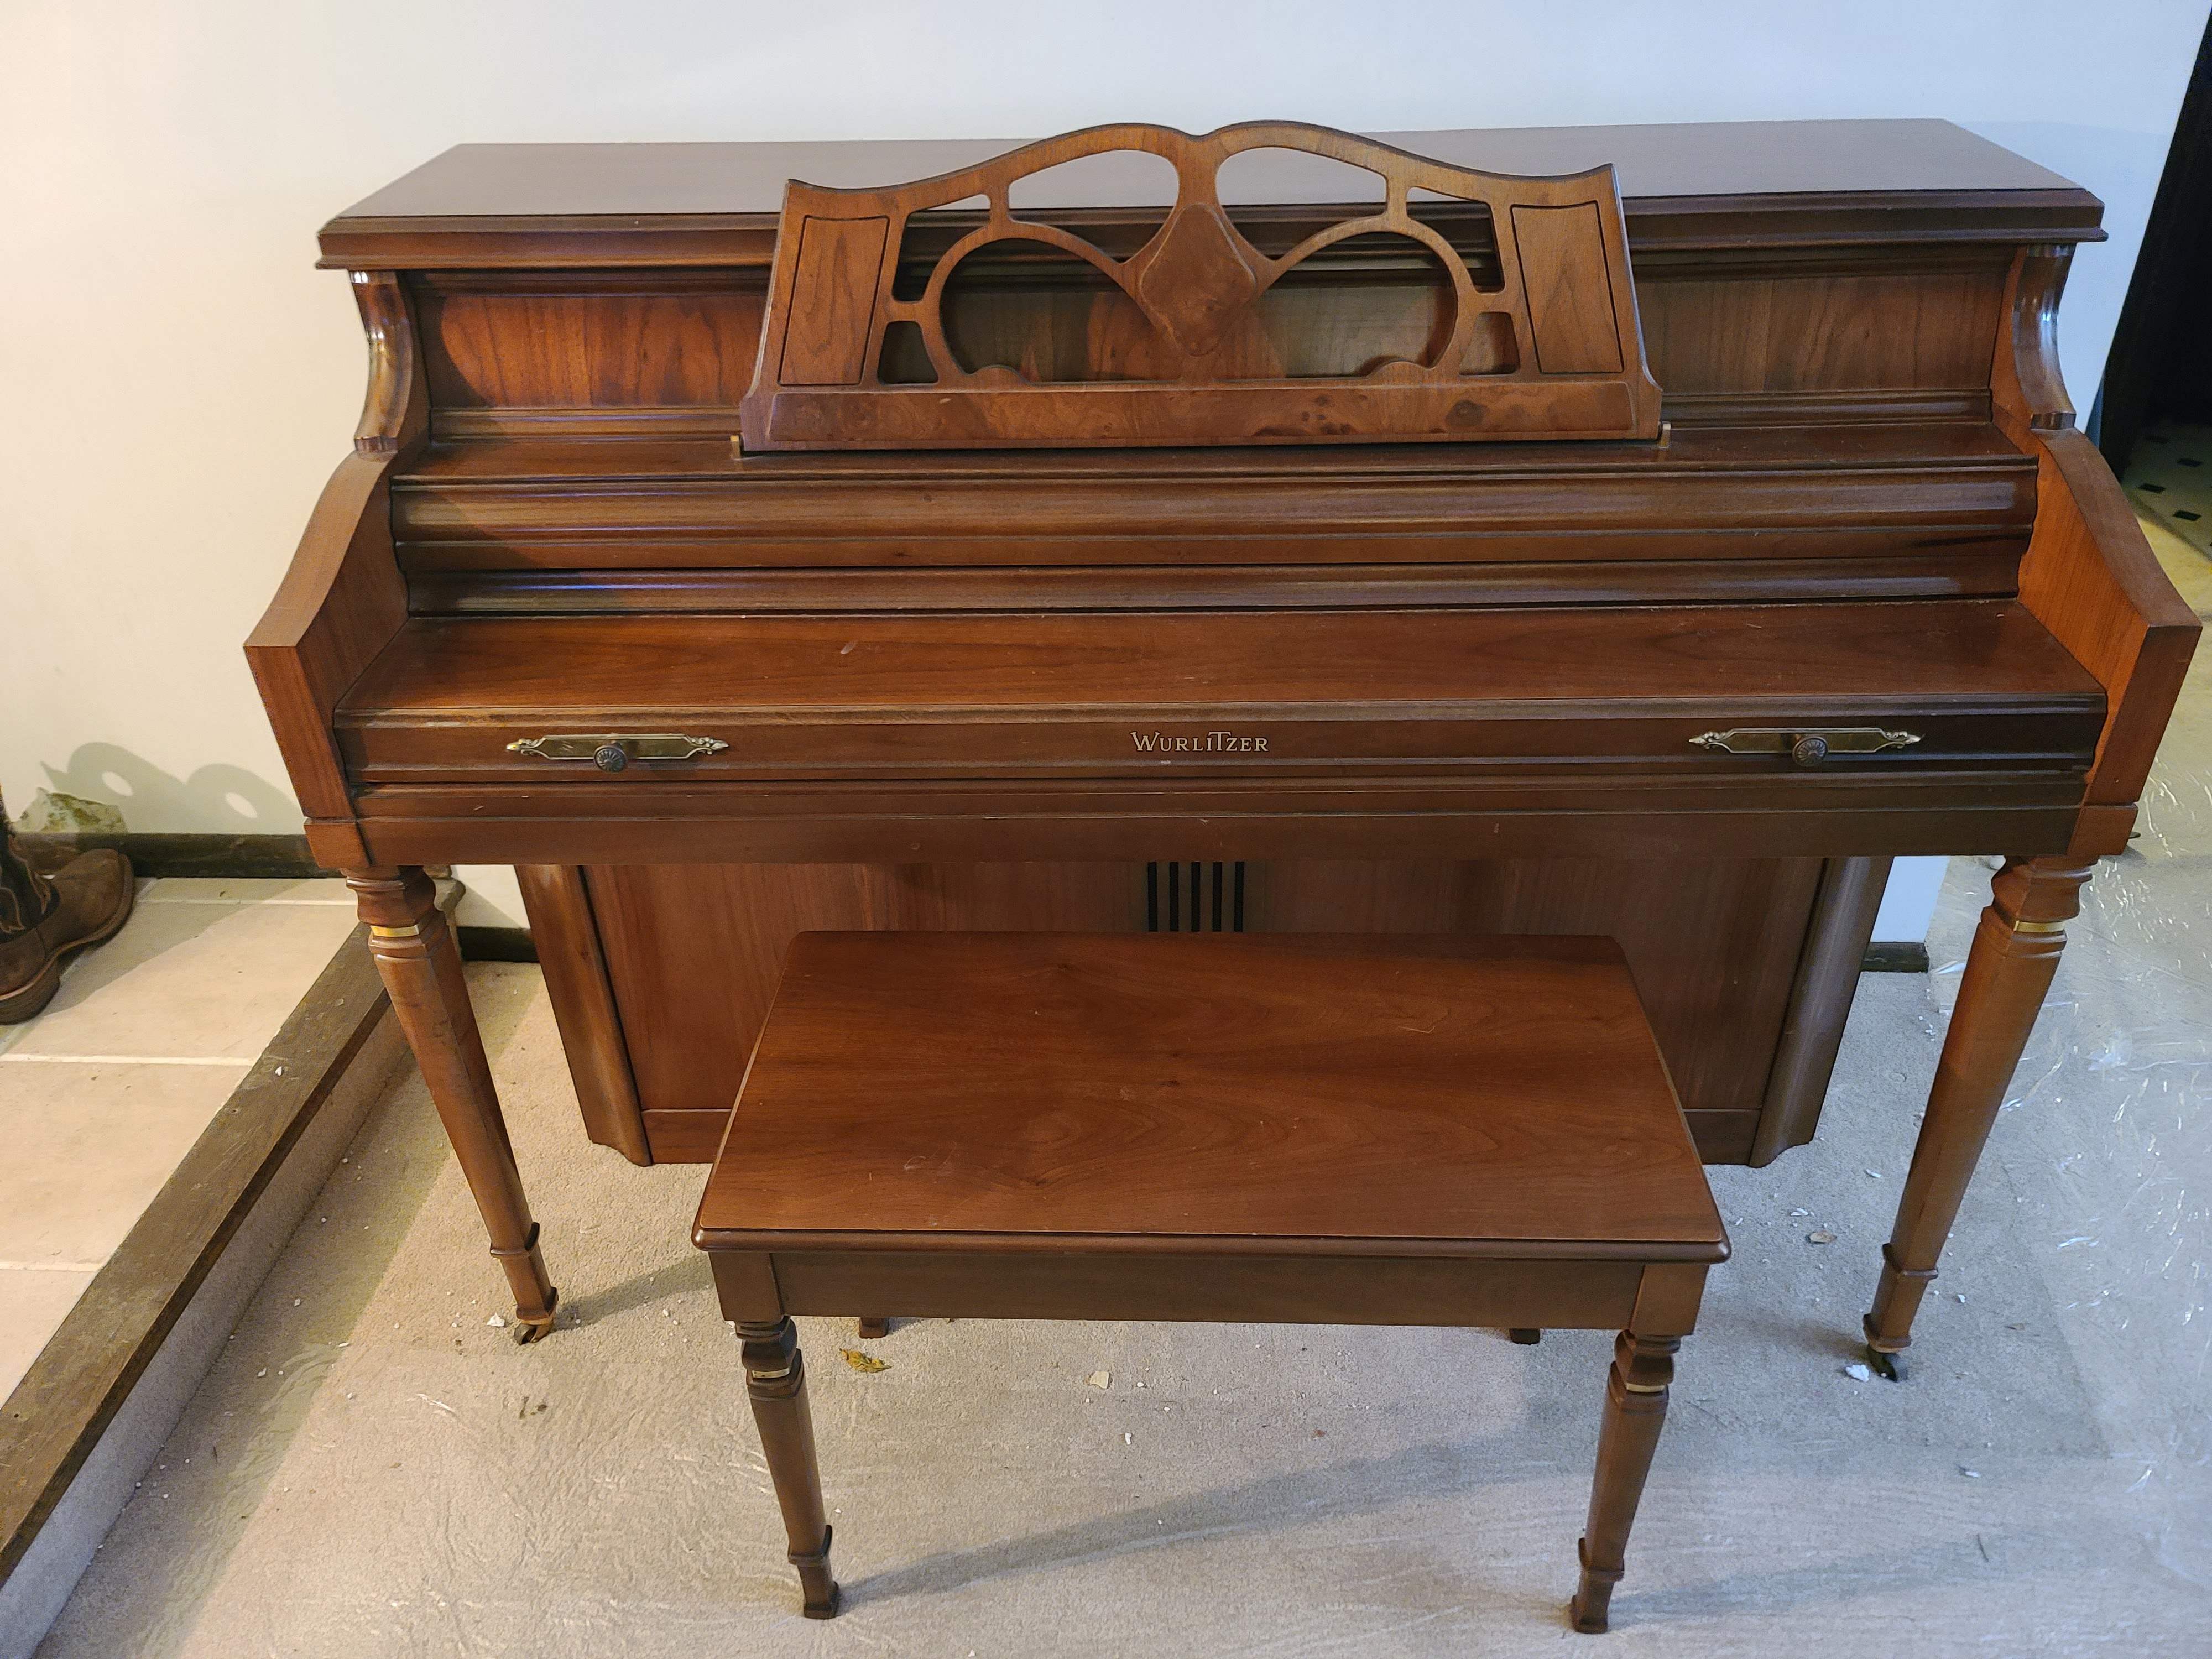 Wurlitzer console piano